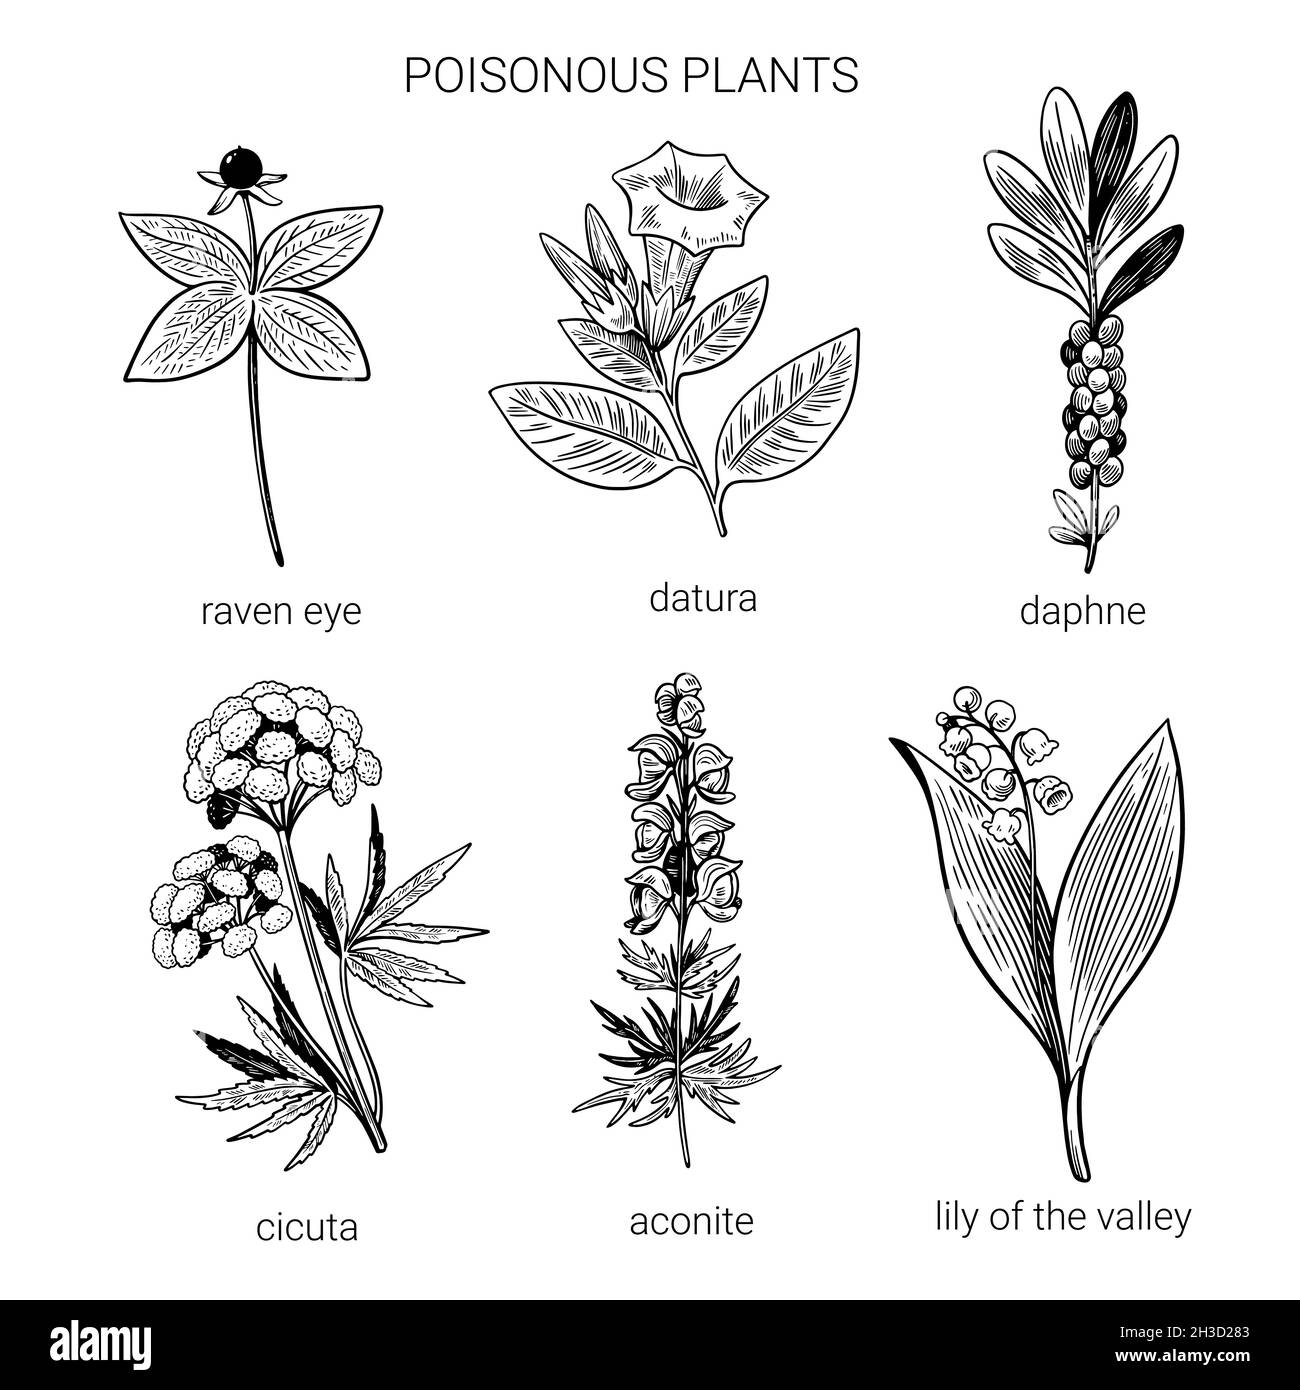 Poisonous Flower Stock Illustrations  1519 Poisonous Flower Stock  Illustrations Vectors  Clipart  Dreamstime